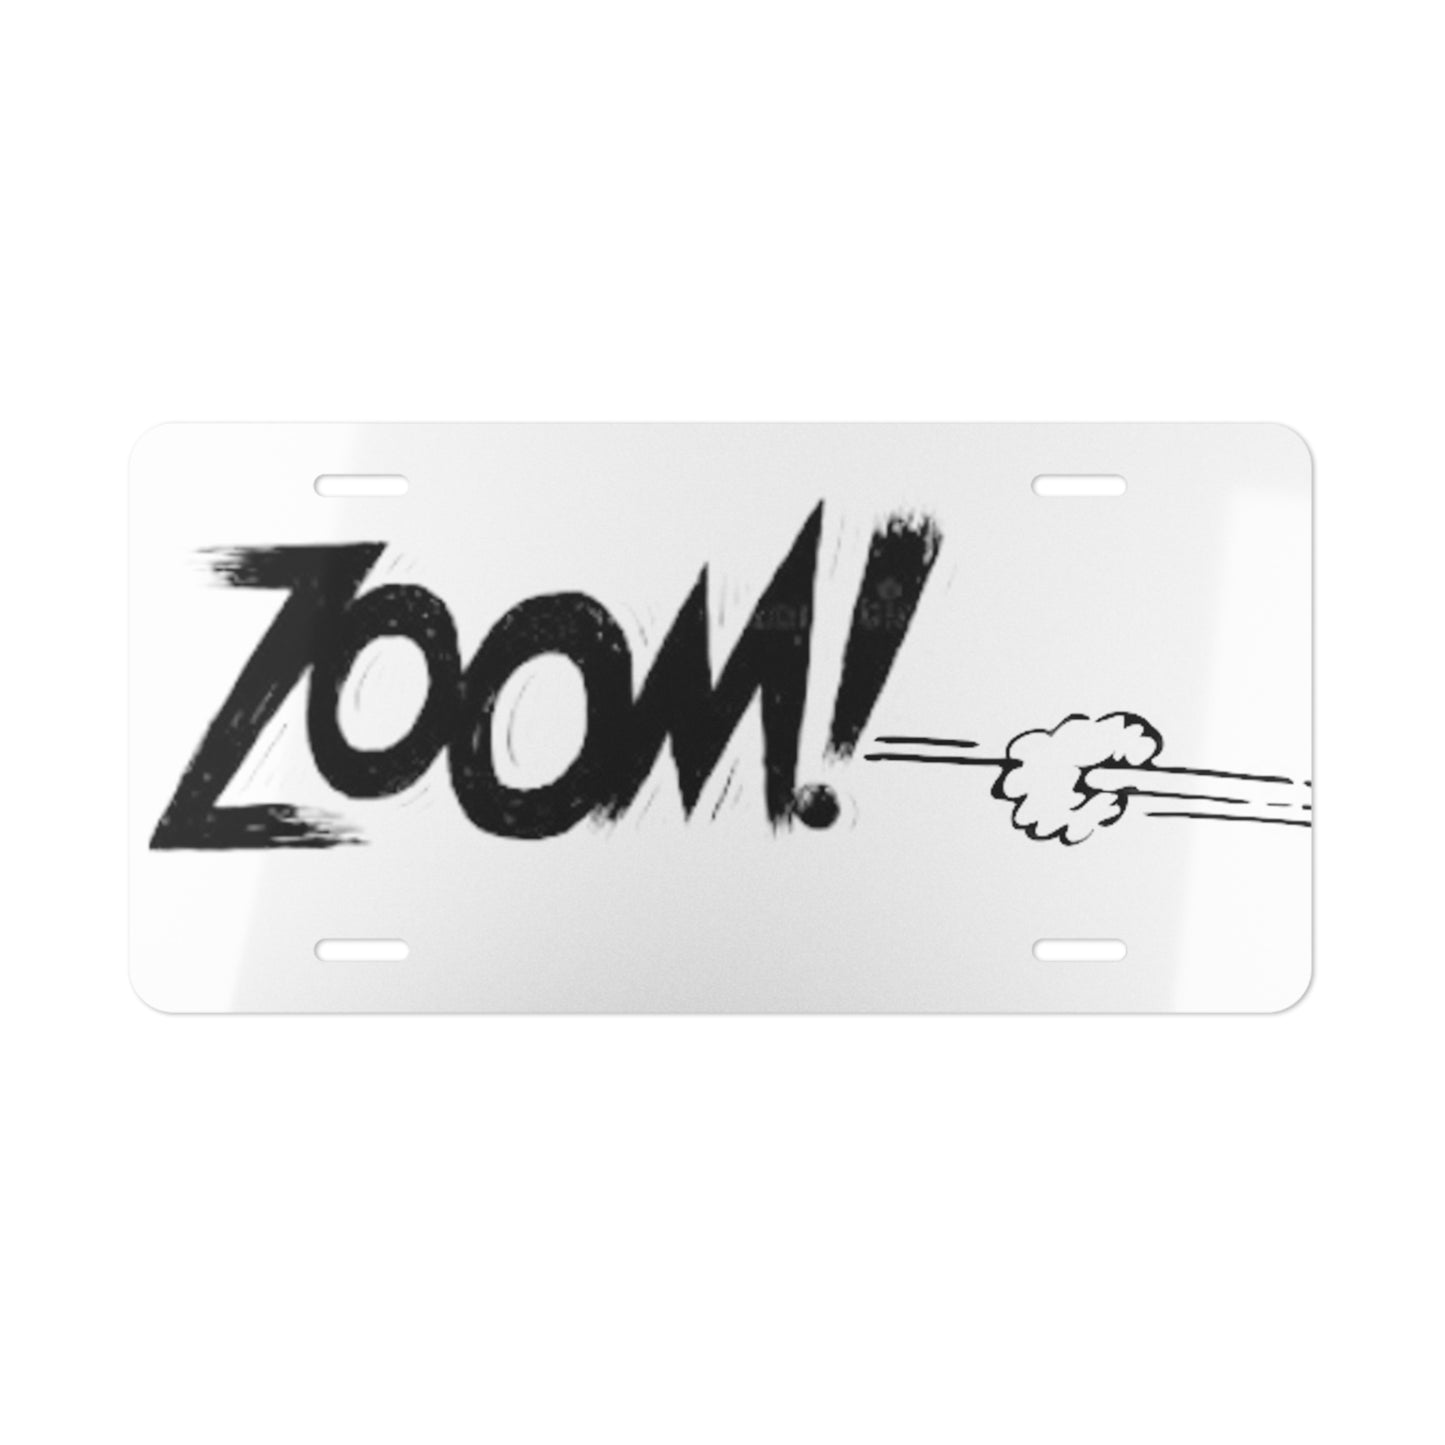 Zoom Novelty Metal Vanity License Plate